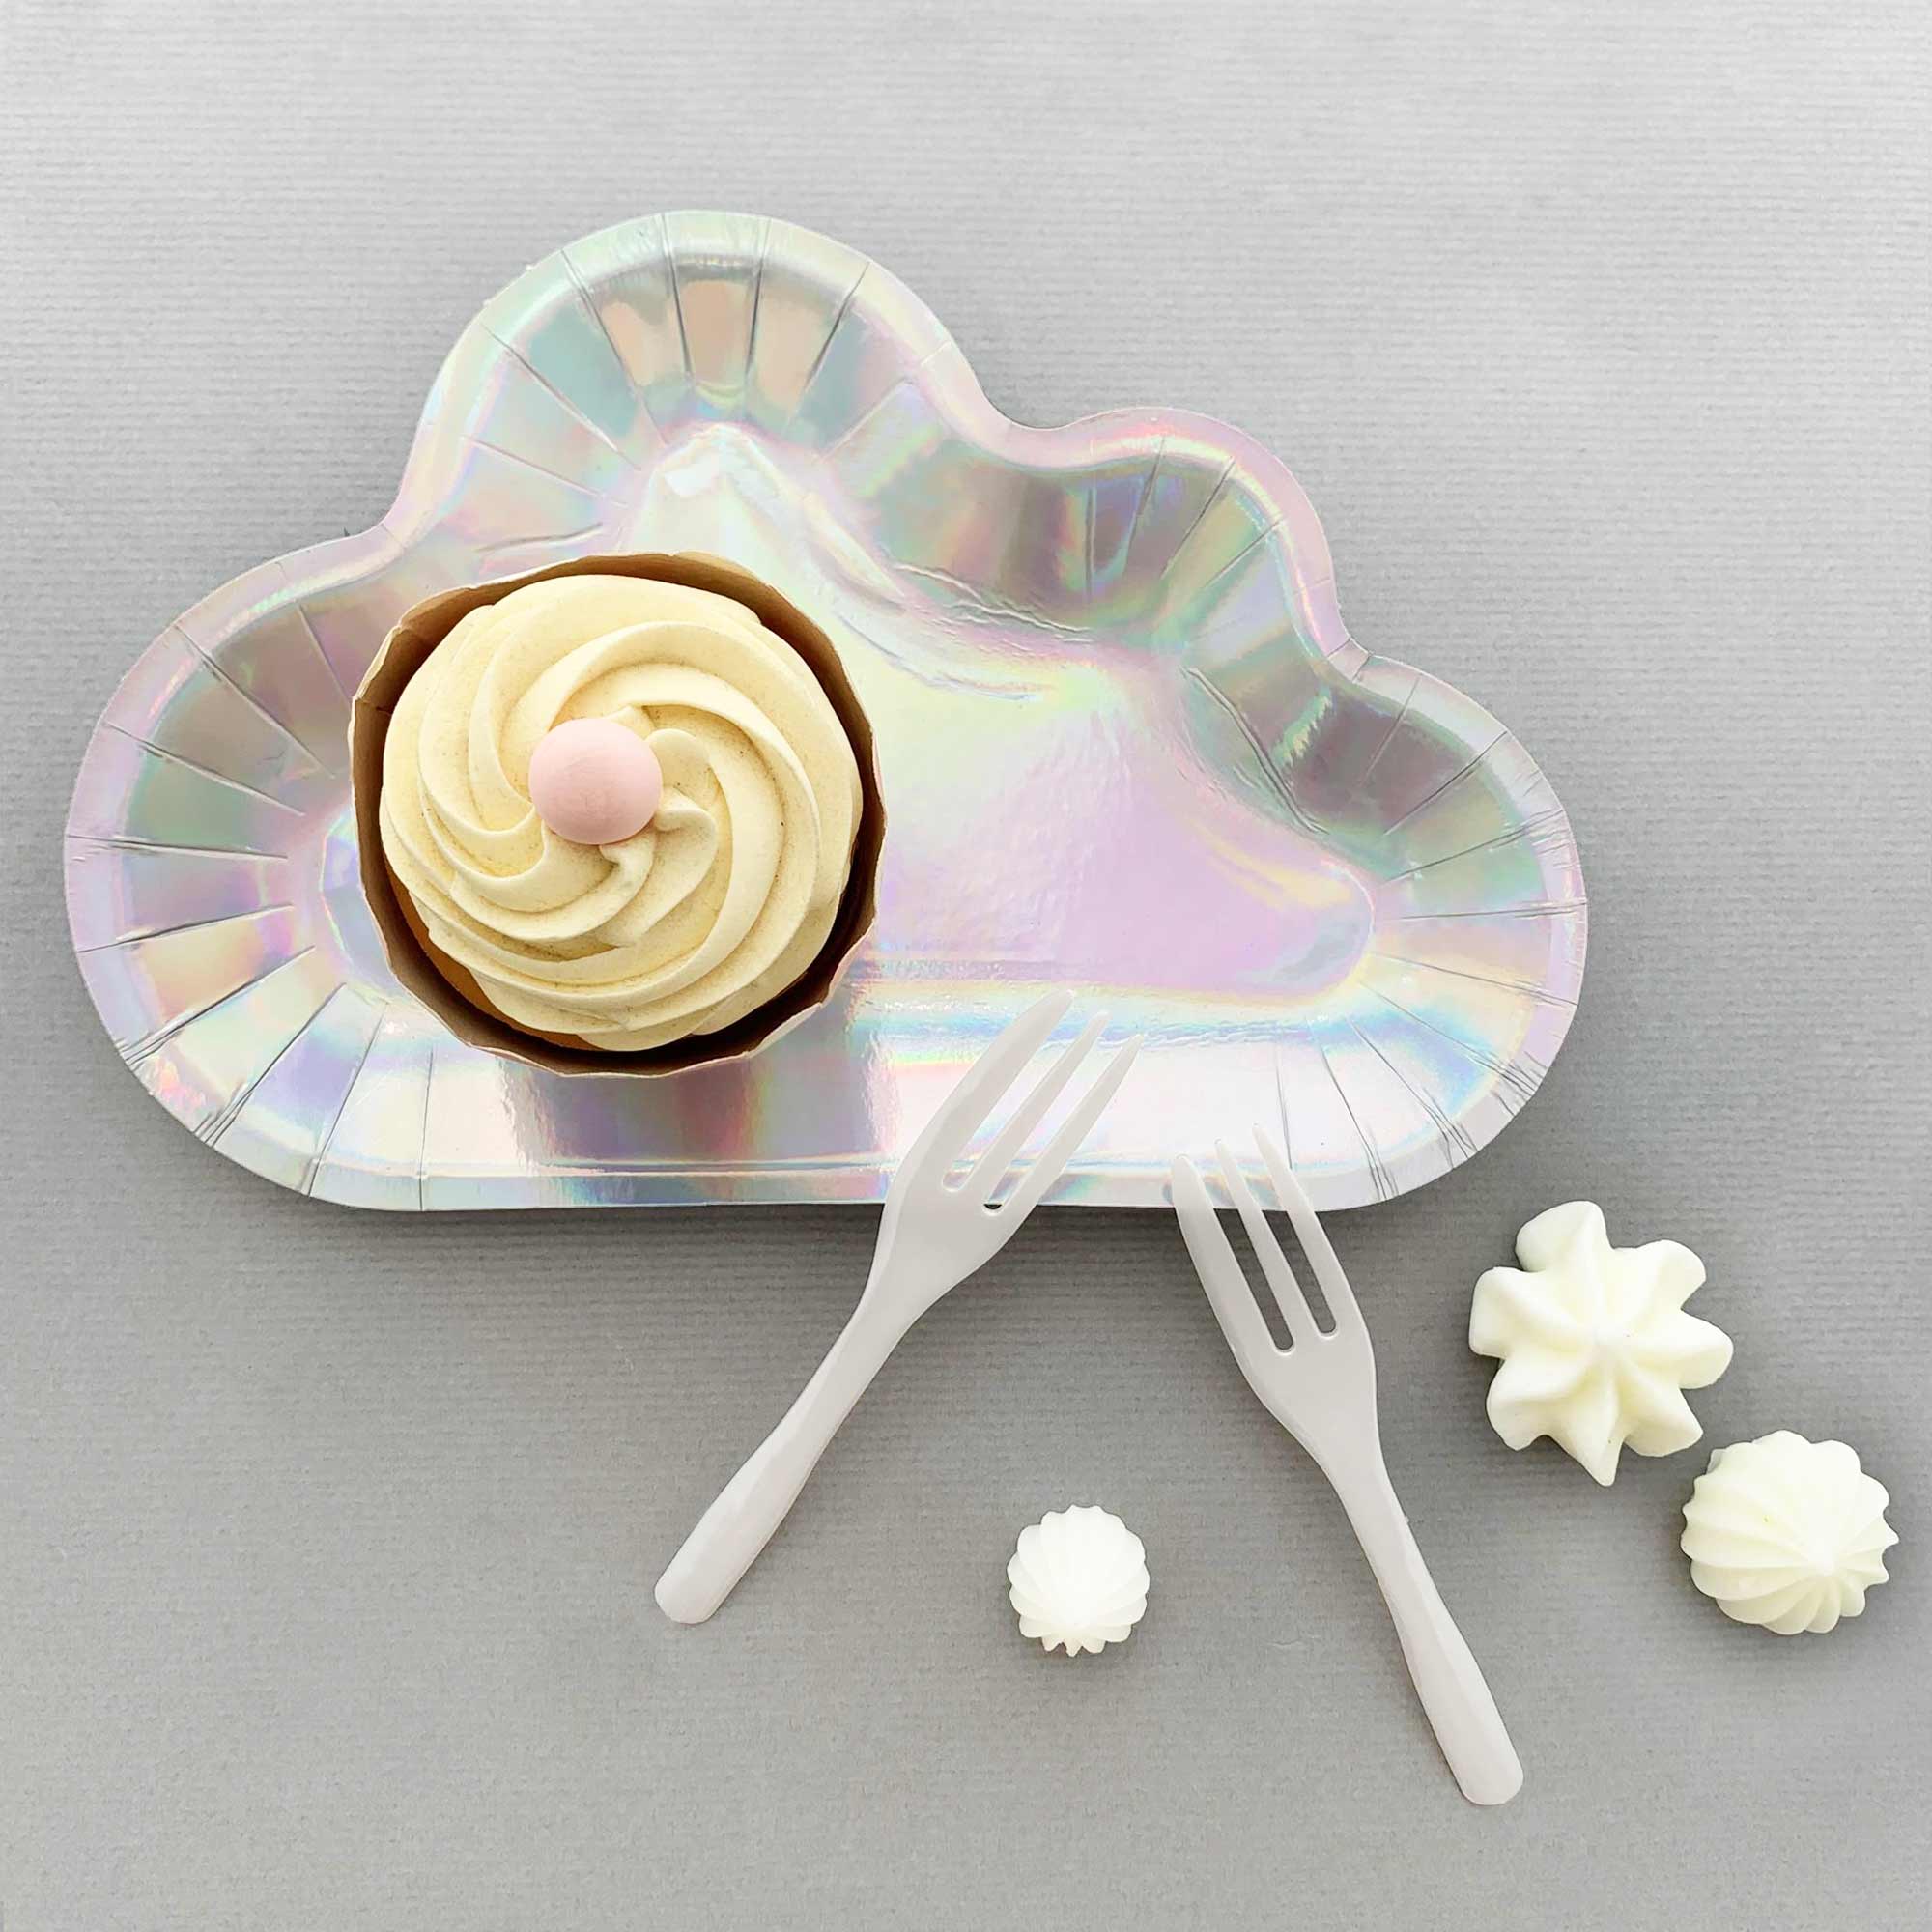 चमकदार बादल आकार की केक प्लेट और फोर्क सेट आकाश थीम के जन्मदिन पार्टी के लिए परफेक्ट है। अपनी डाइनिंग टेबल को चमकाएं चमकदार बादल प्लेट से और अपने जश्न में चमक जोड़ें!